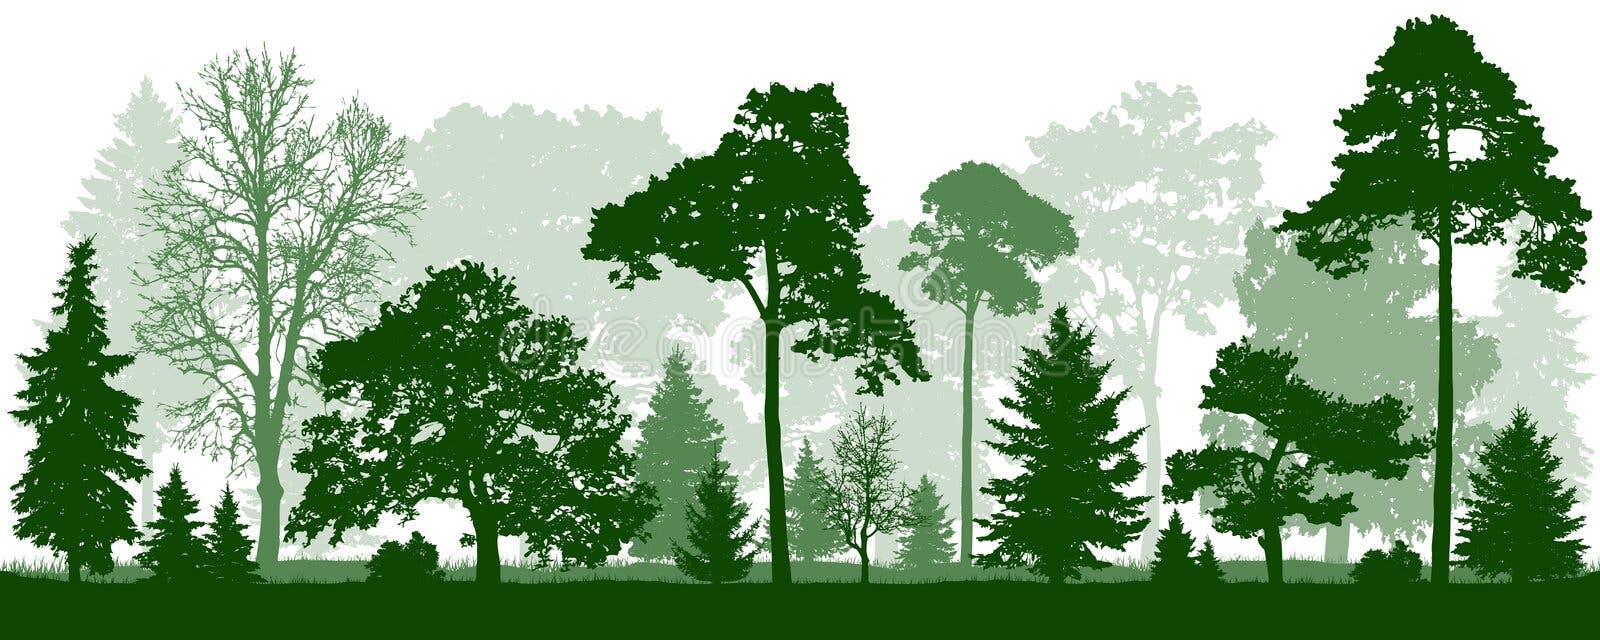 16 melhor ideia de Ilustração de floresta